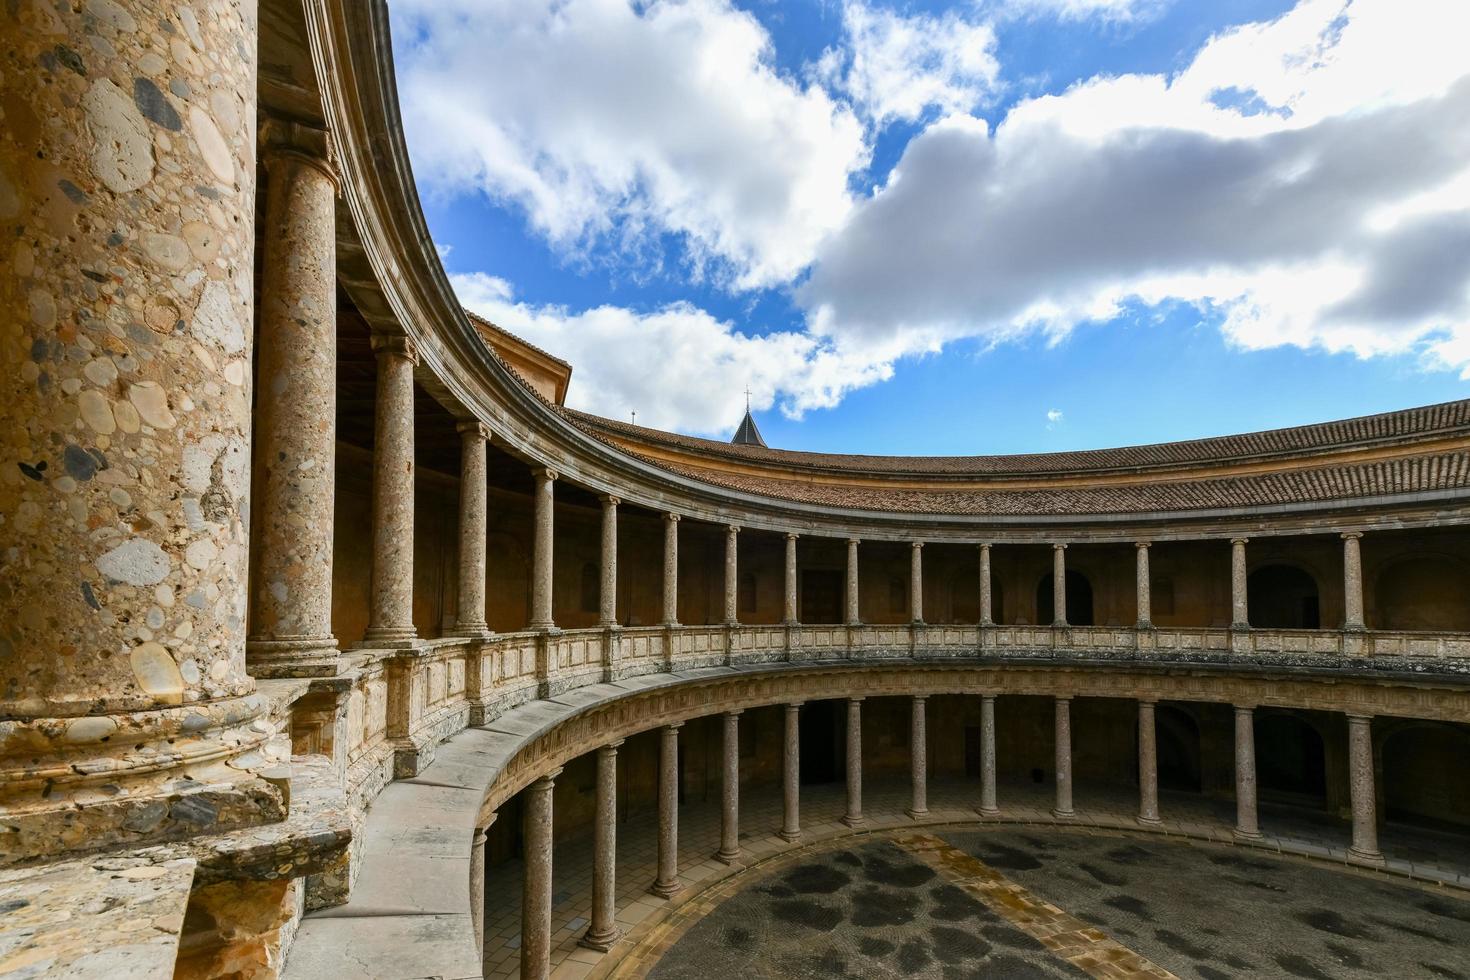 Grenade, Espagne - nov 29, 2021, le unique circulaire patio de le palais de Charles v palacio de carlos v avec ses deux les niveaux de Colonnes de dorique et ionique colonnades, alhambra, Grenade, Espagne. photo